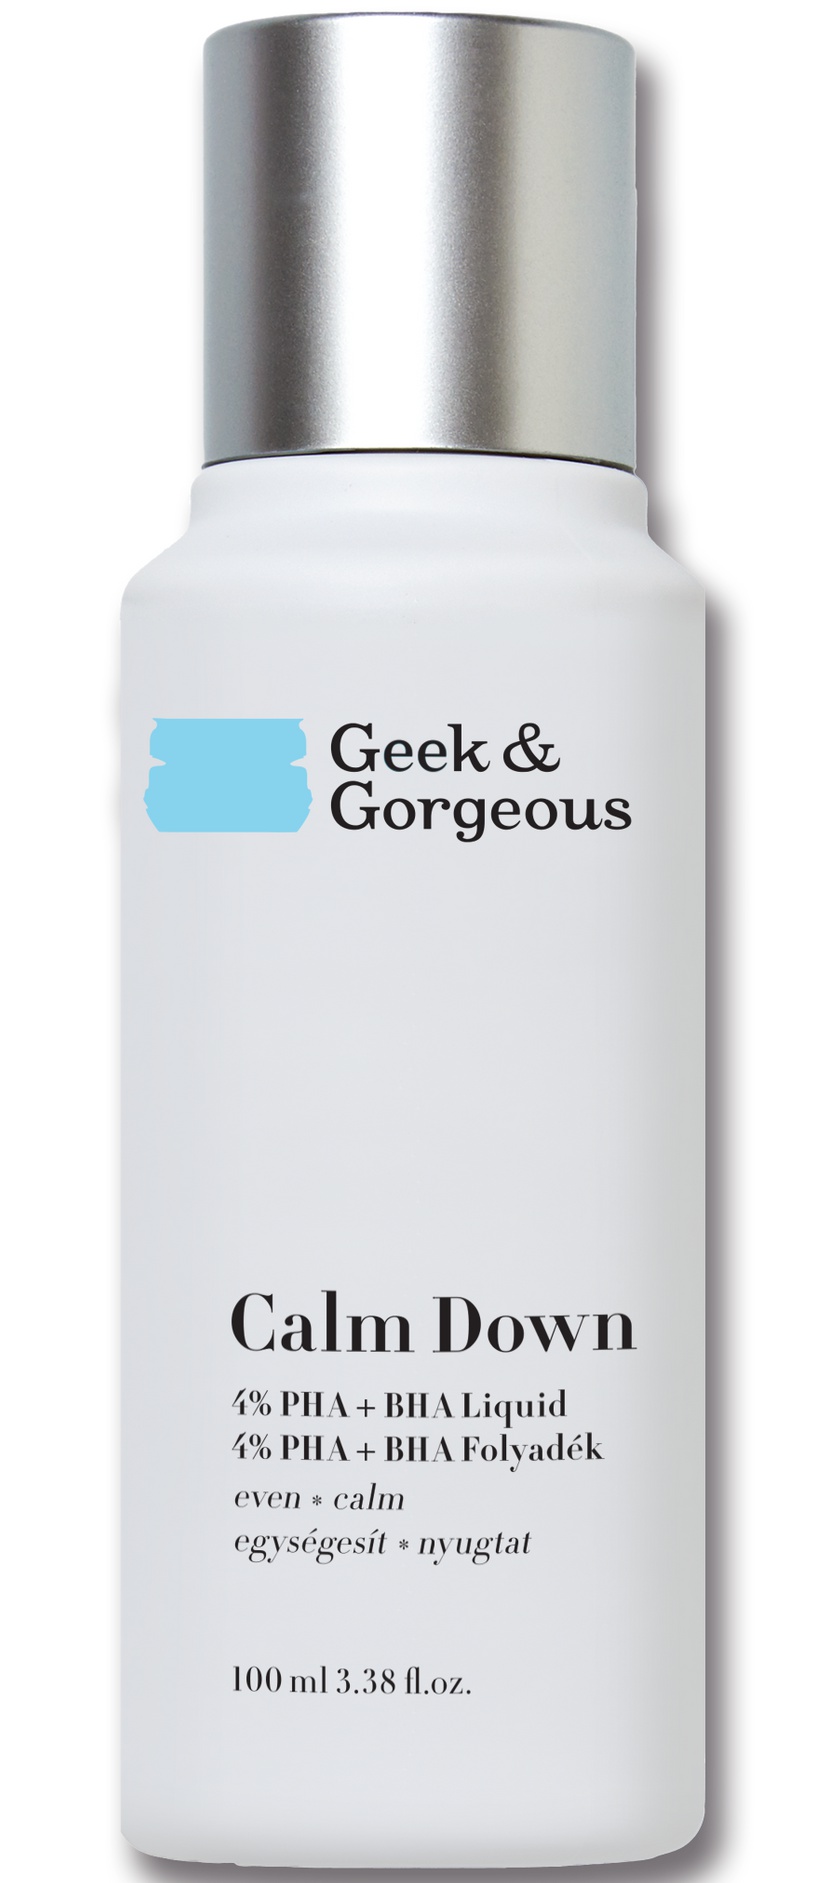 Geek & Gorgeous Calm Down  4% PHA + BHA Liquid